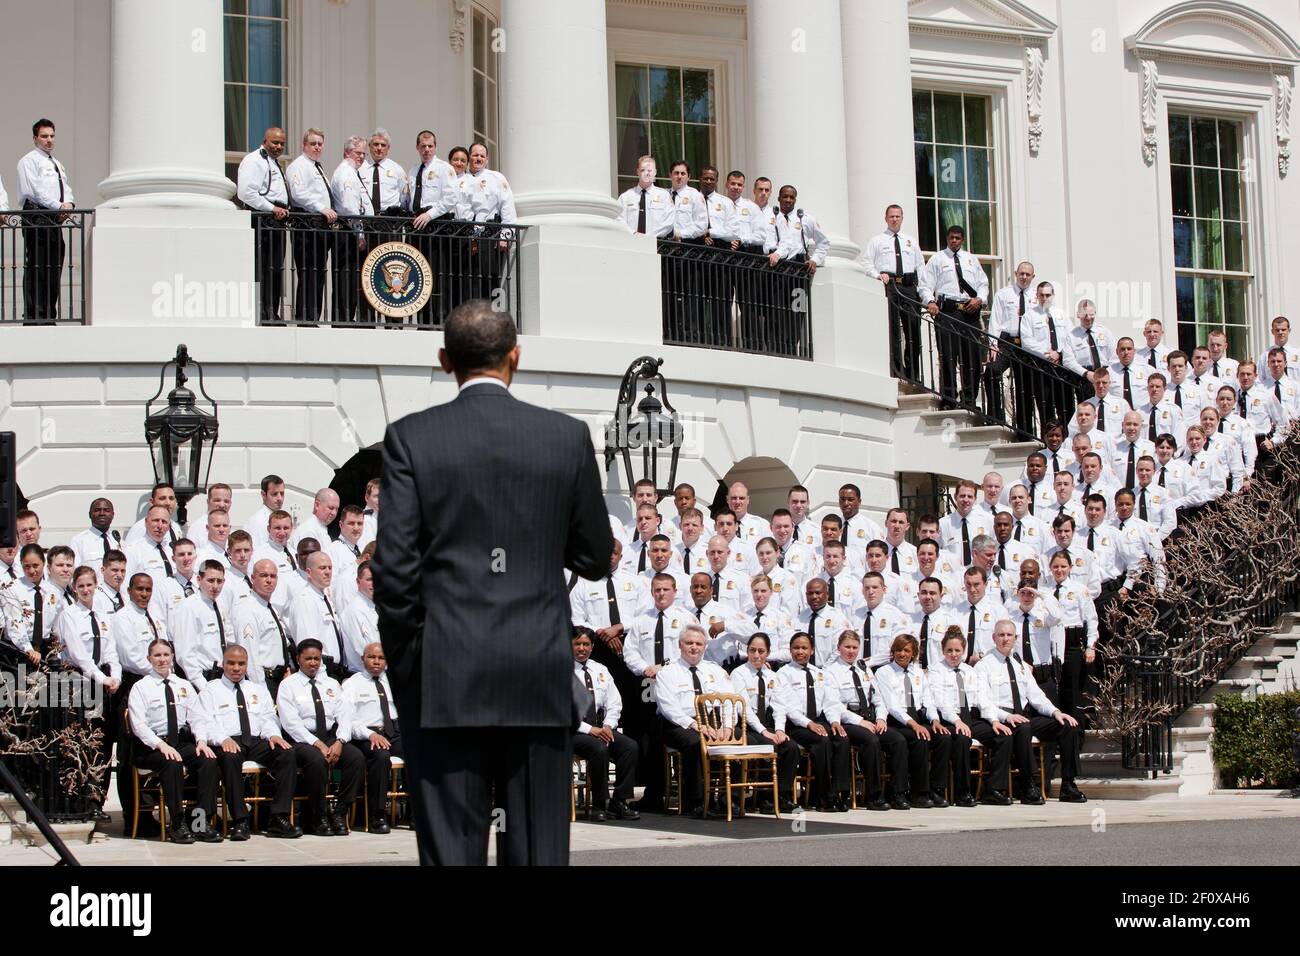 El presidente Barack Obama se dirige a los oficiales de la División uniformados del Servicio Secreto de los Estados Unidos antes de hacer una foto de grupo en el Portico Sur de la Casa Blanca, el 4 de abril de 2011. Foto de stock